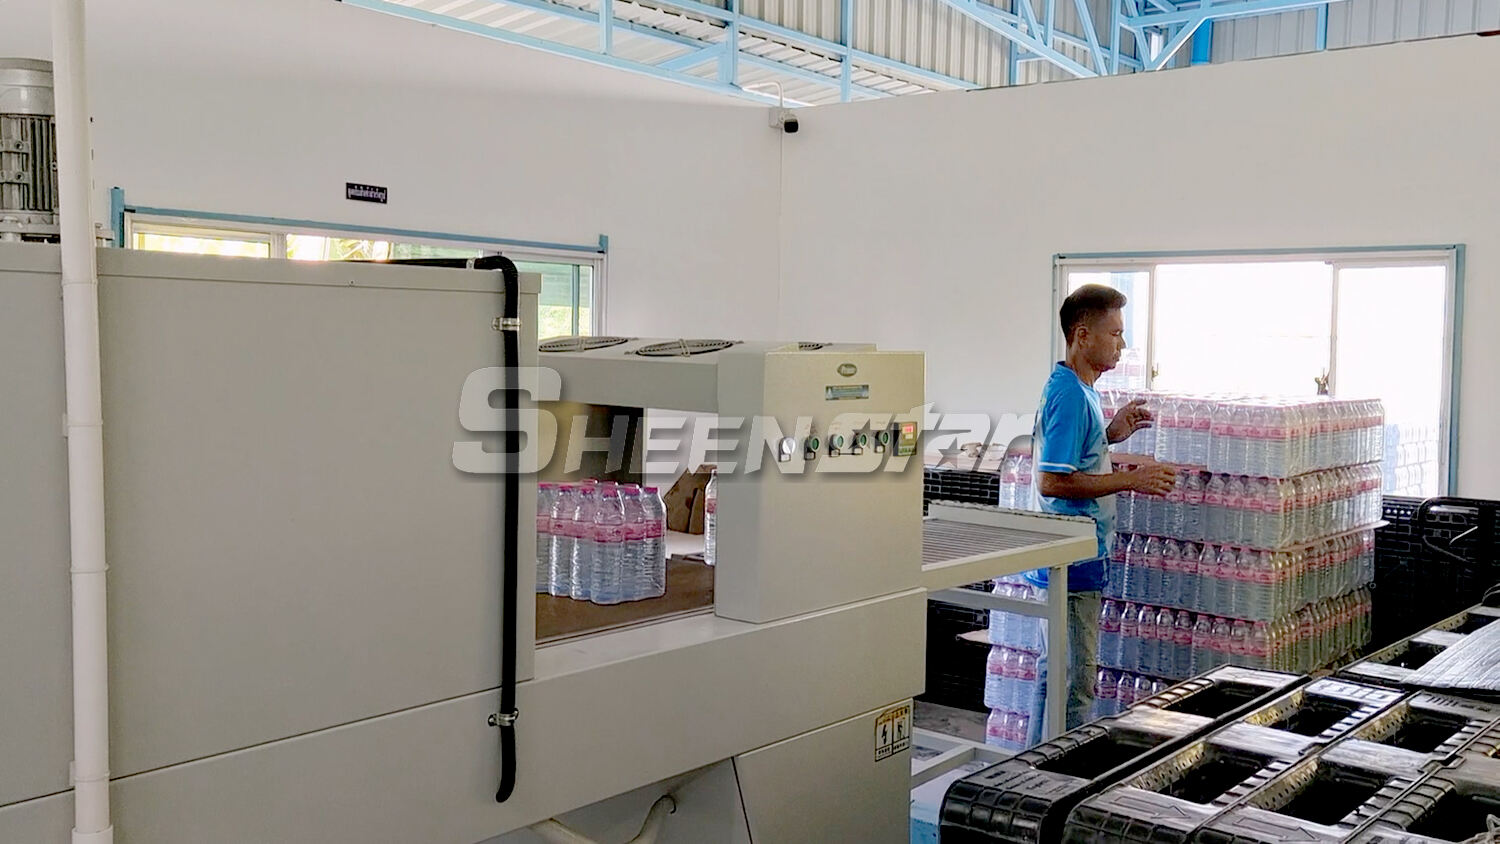 5000 bph drinkwaterproductielijn in klantfabriek